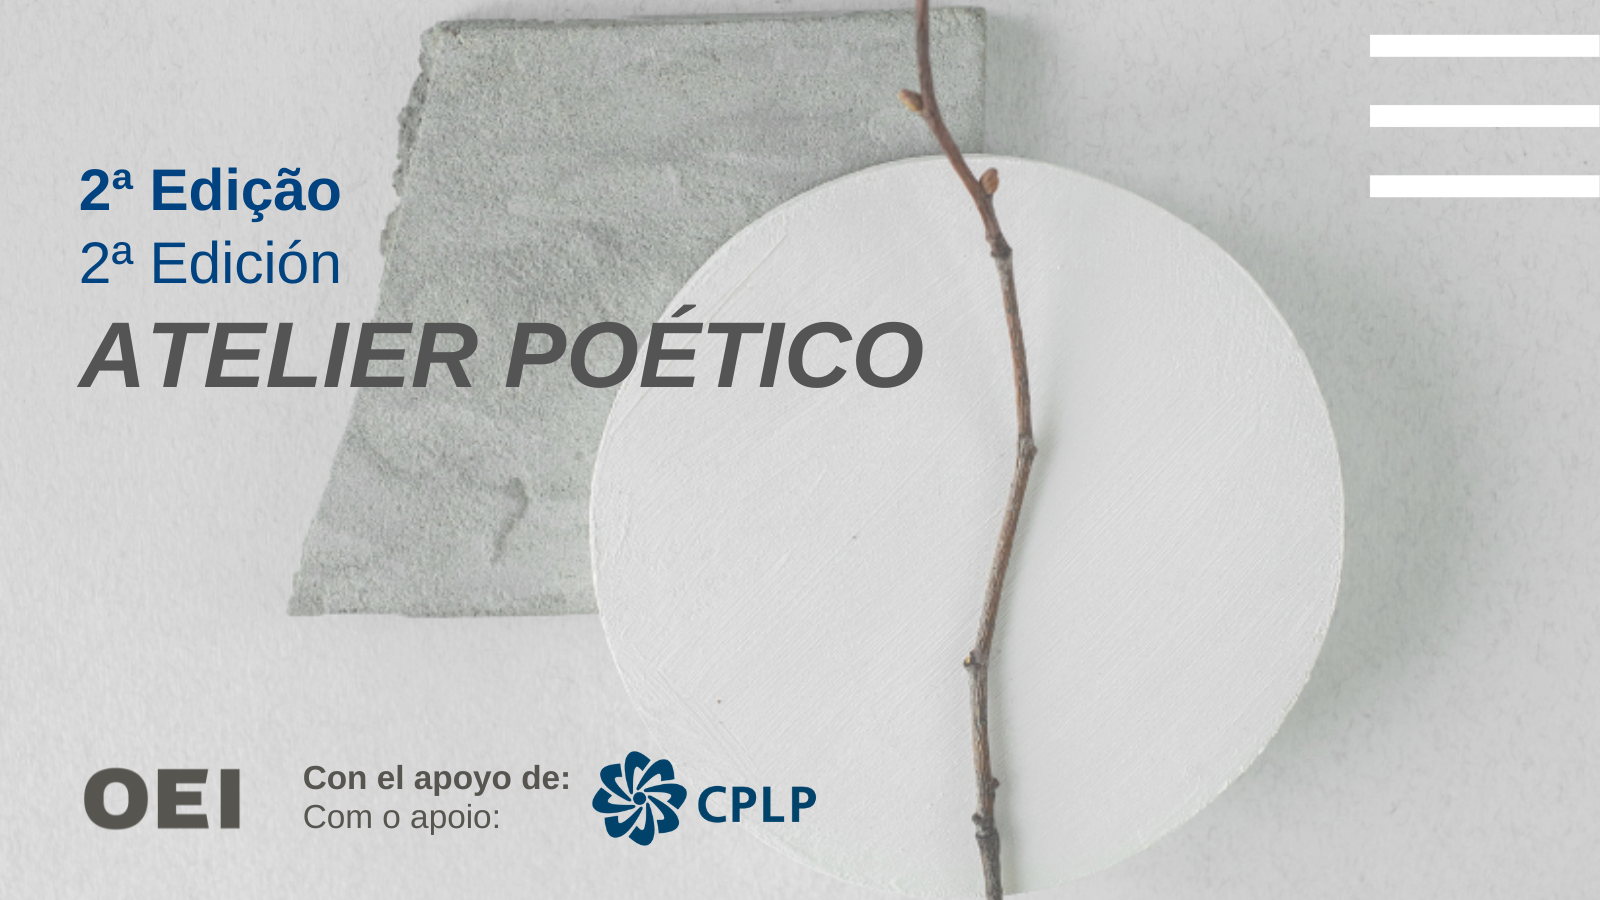 Atelier Poético, o projeto da OEI de residências artísticas para poetas da Ibero-américa e da CPLP, prorroga o prazo para candidaturas